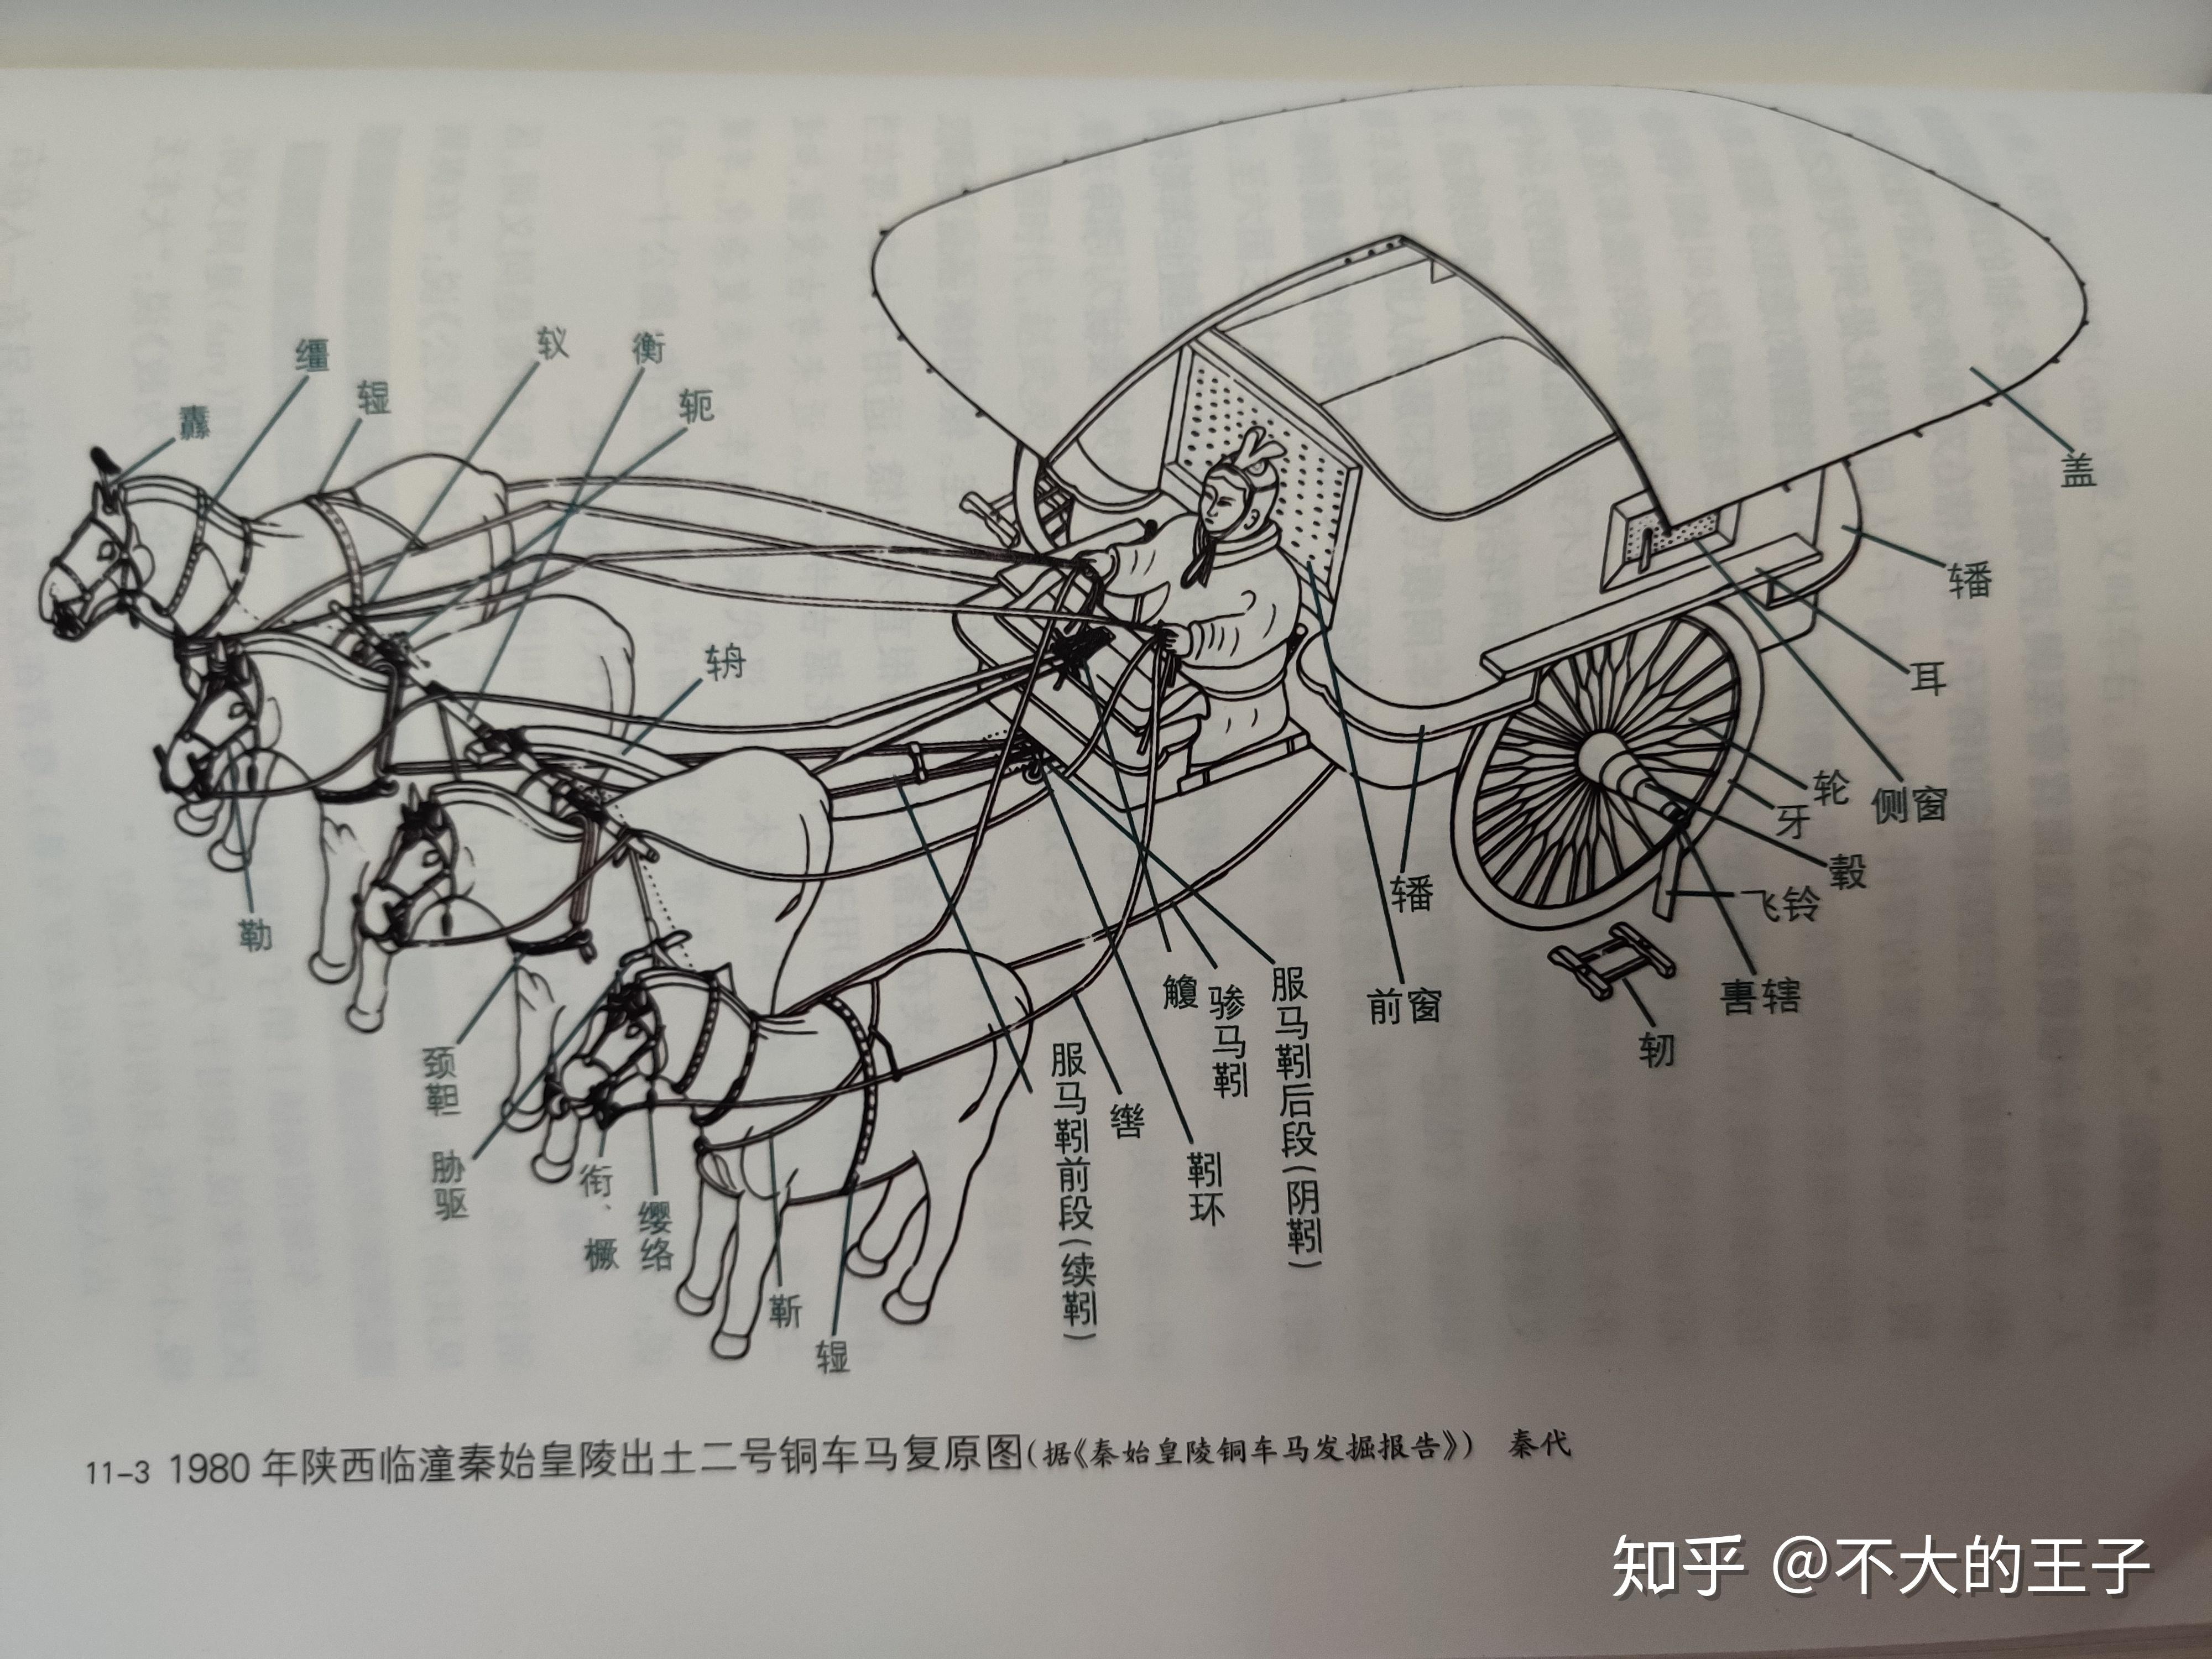 1中国古代车马结构及用途中国古代车马不分家,本文论述目标为车马,牛